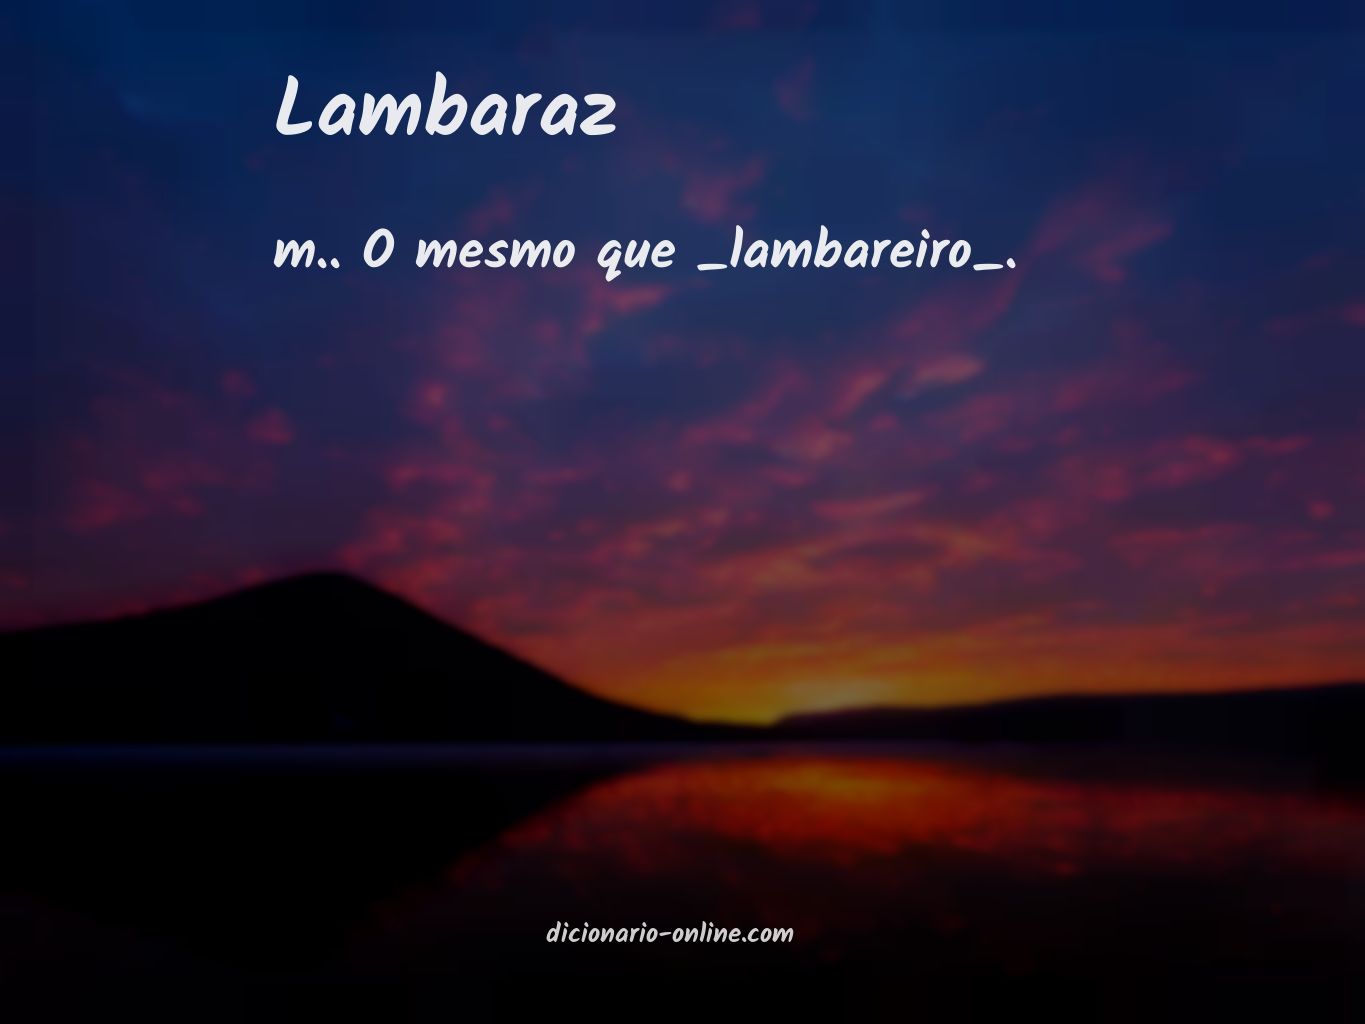 Significado de lambaraz